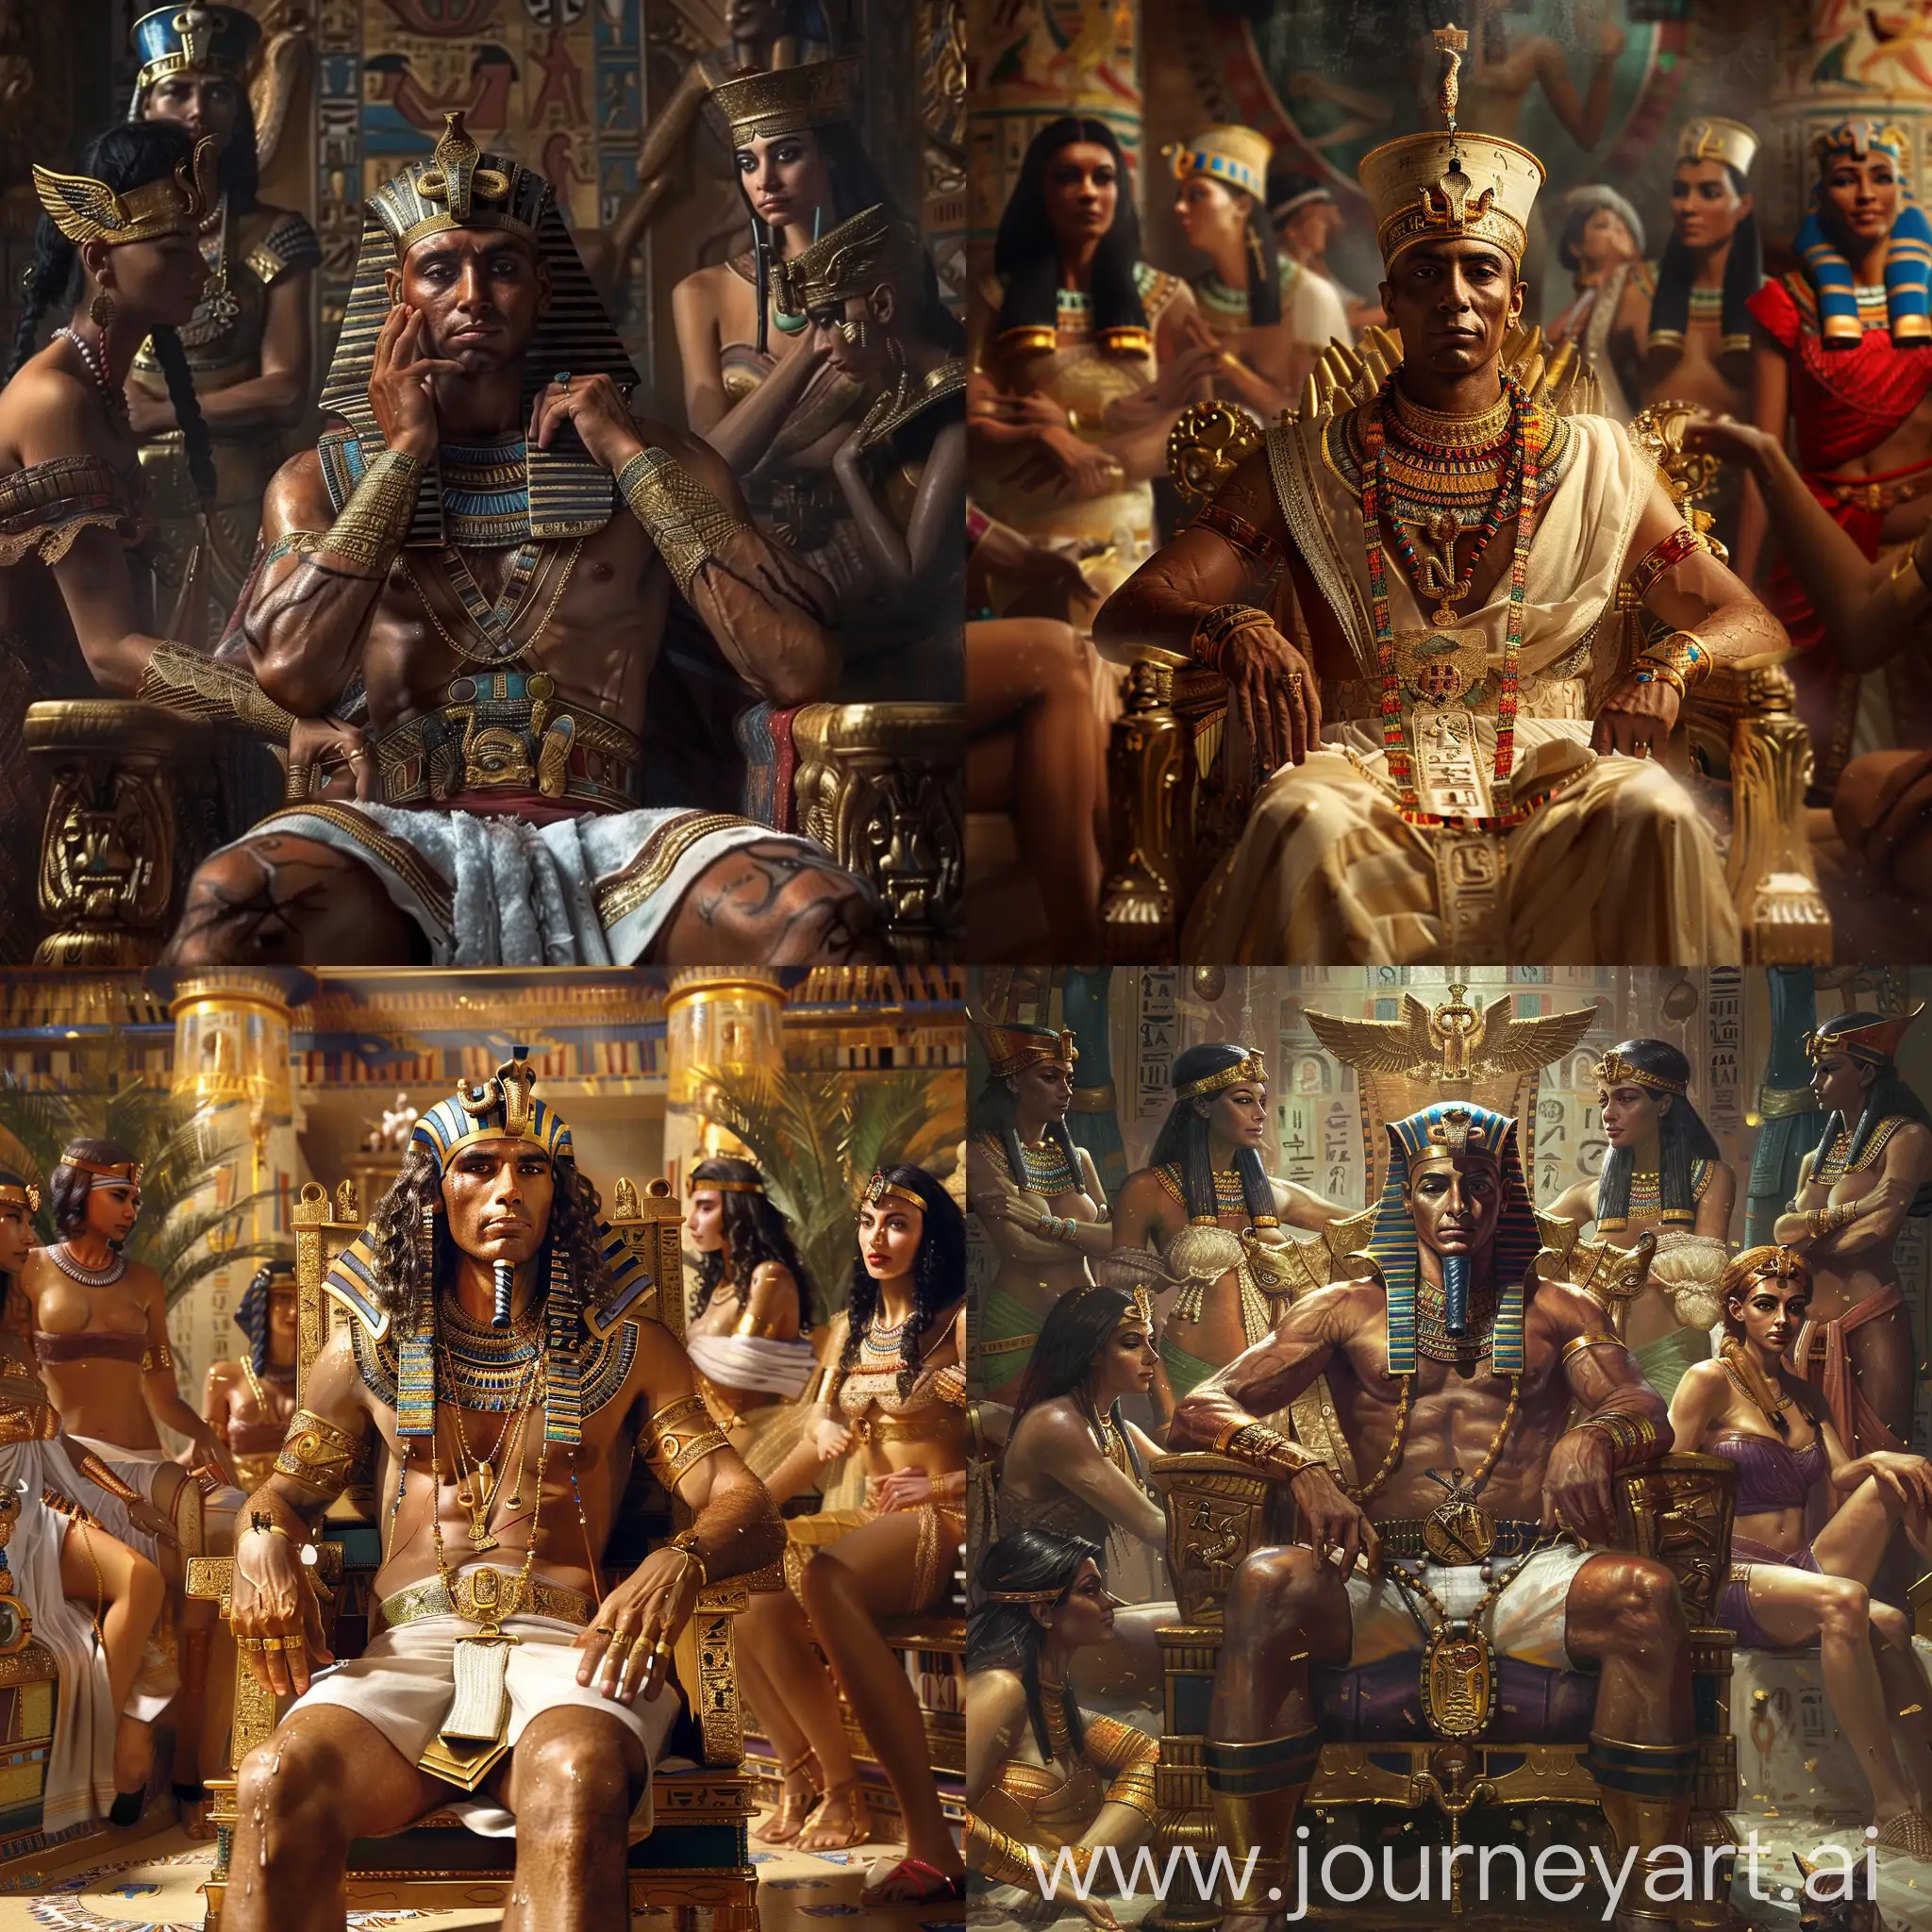 древнеегипетский фараон сидит в тронном зале, его окружают красивые наложницы, золото, украшения, утонченно, фотореализм, гиперреализм